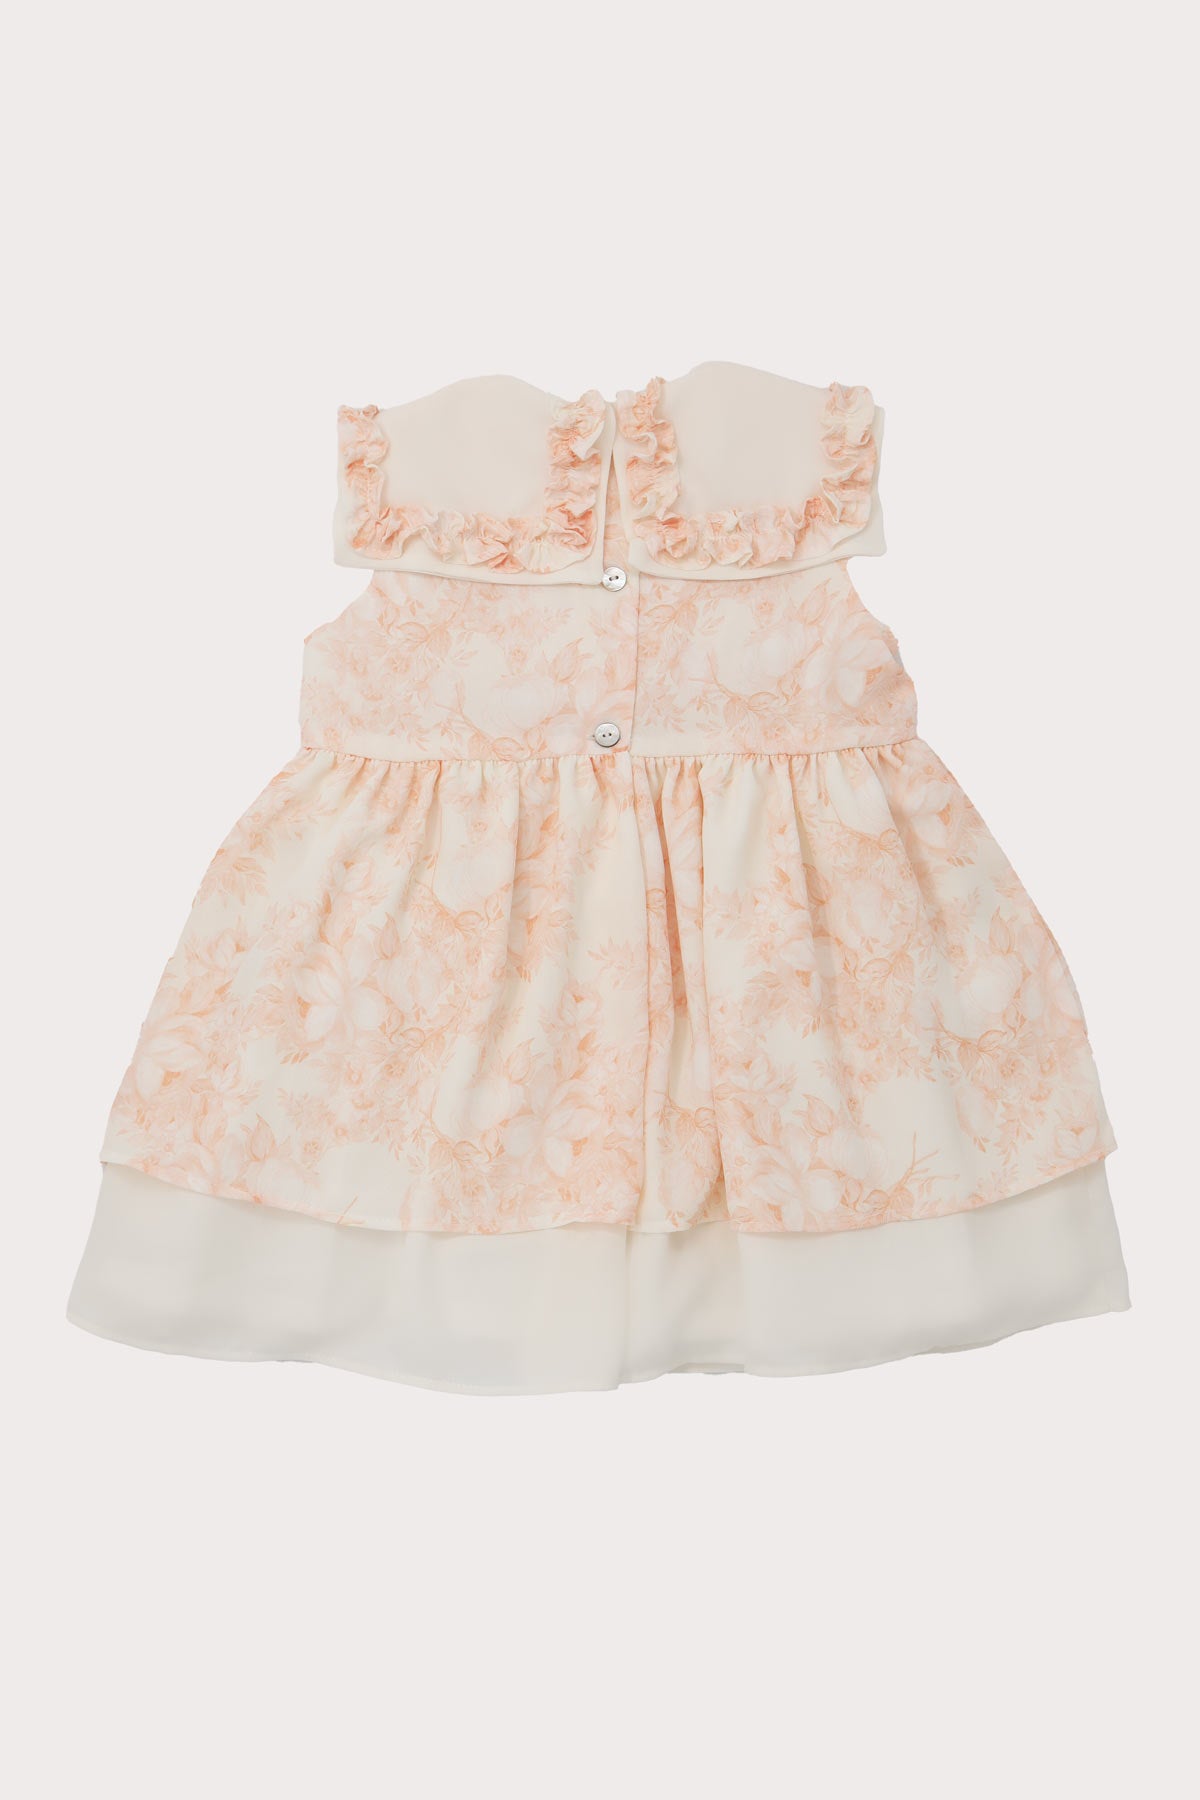 back of ivory & chiffon peach floral girls chiffon dress